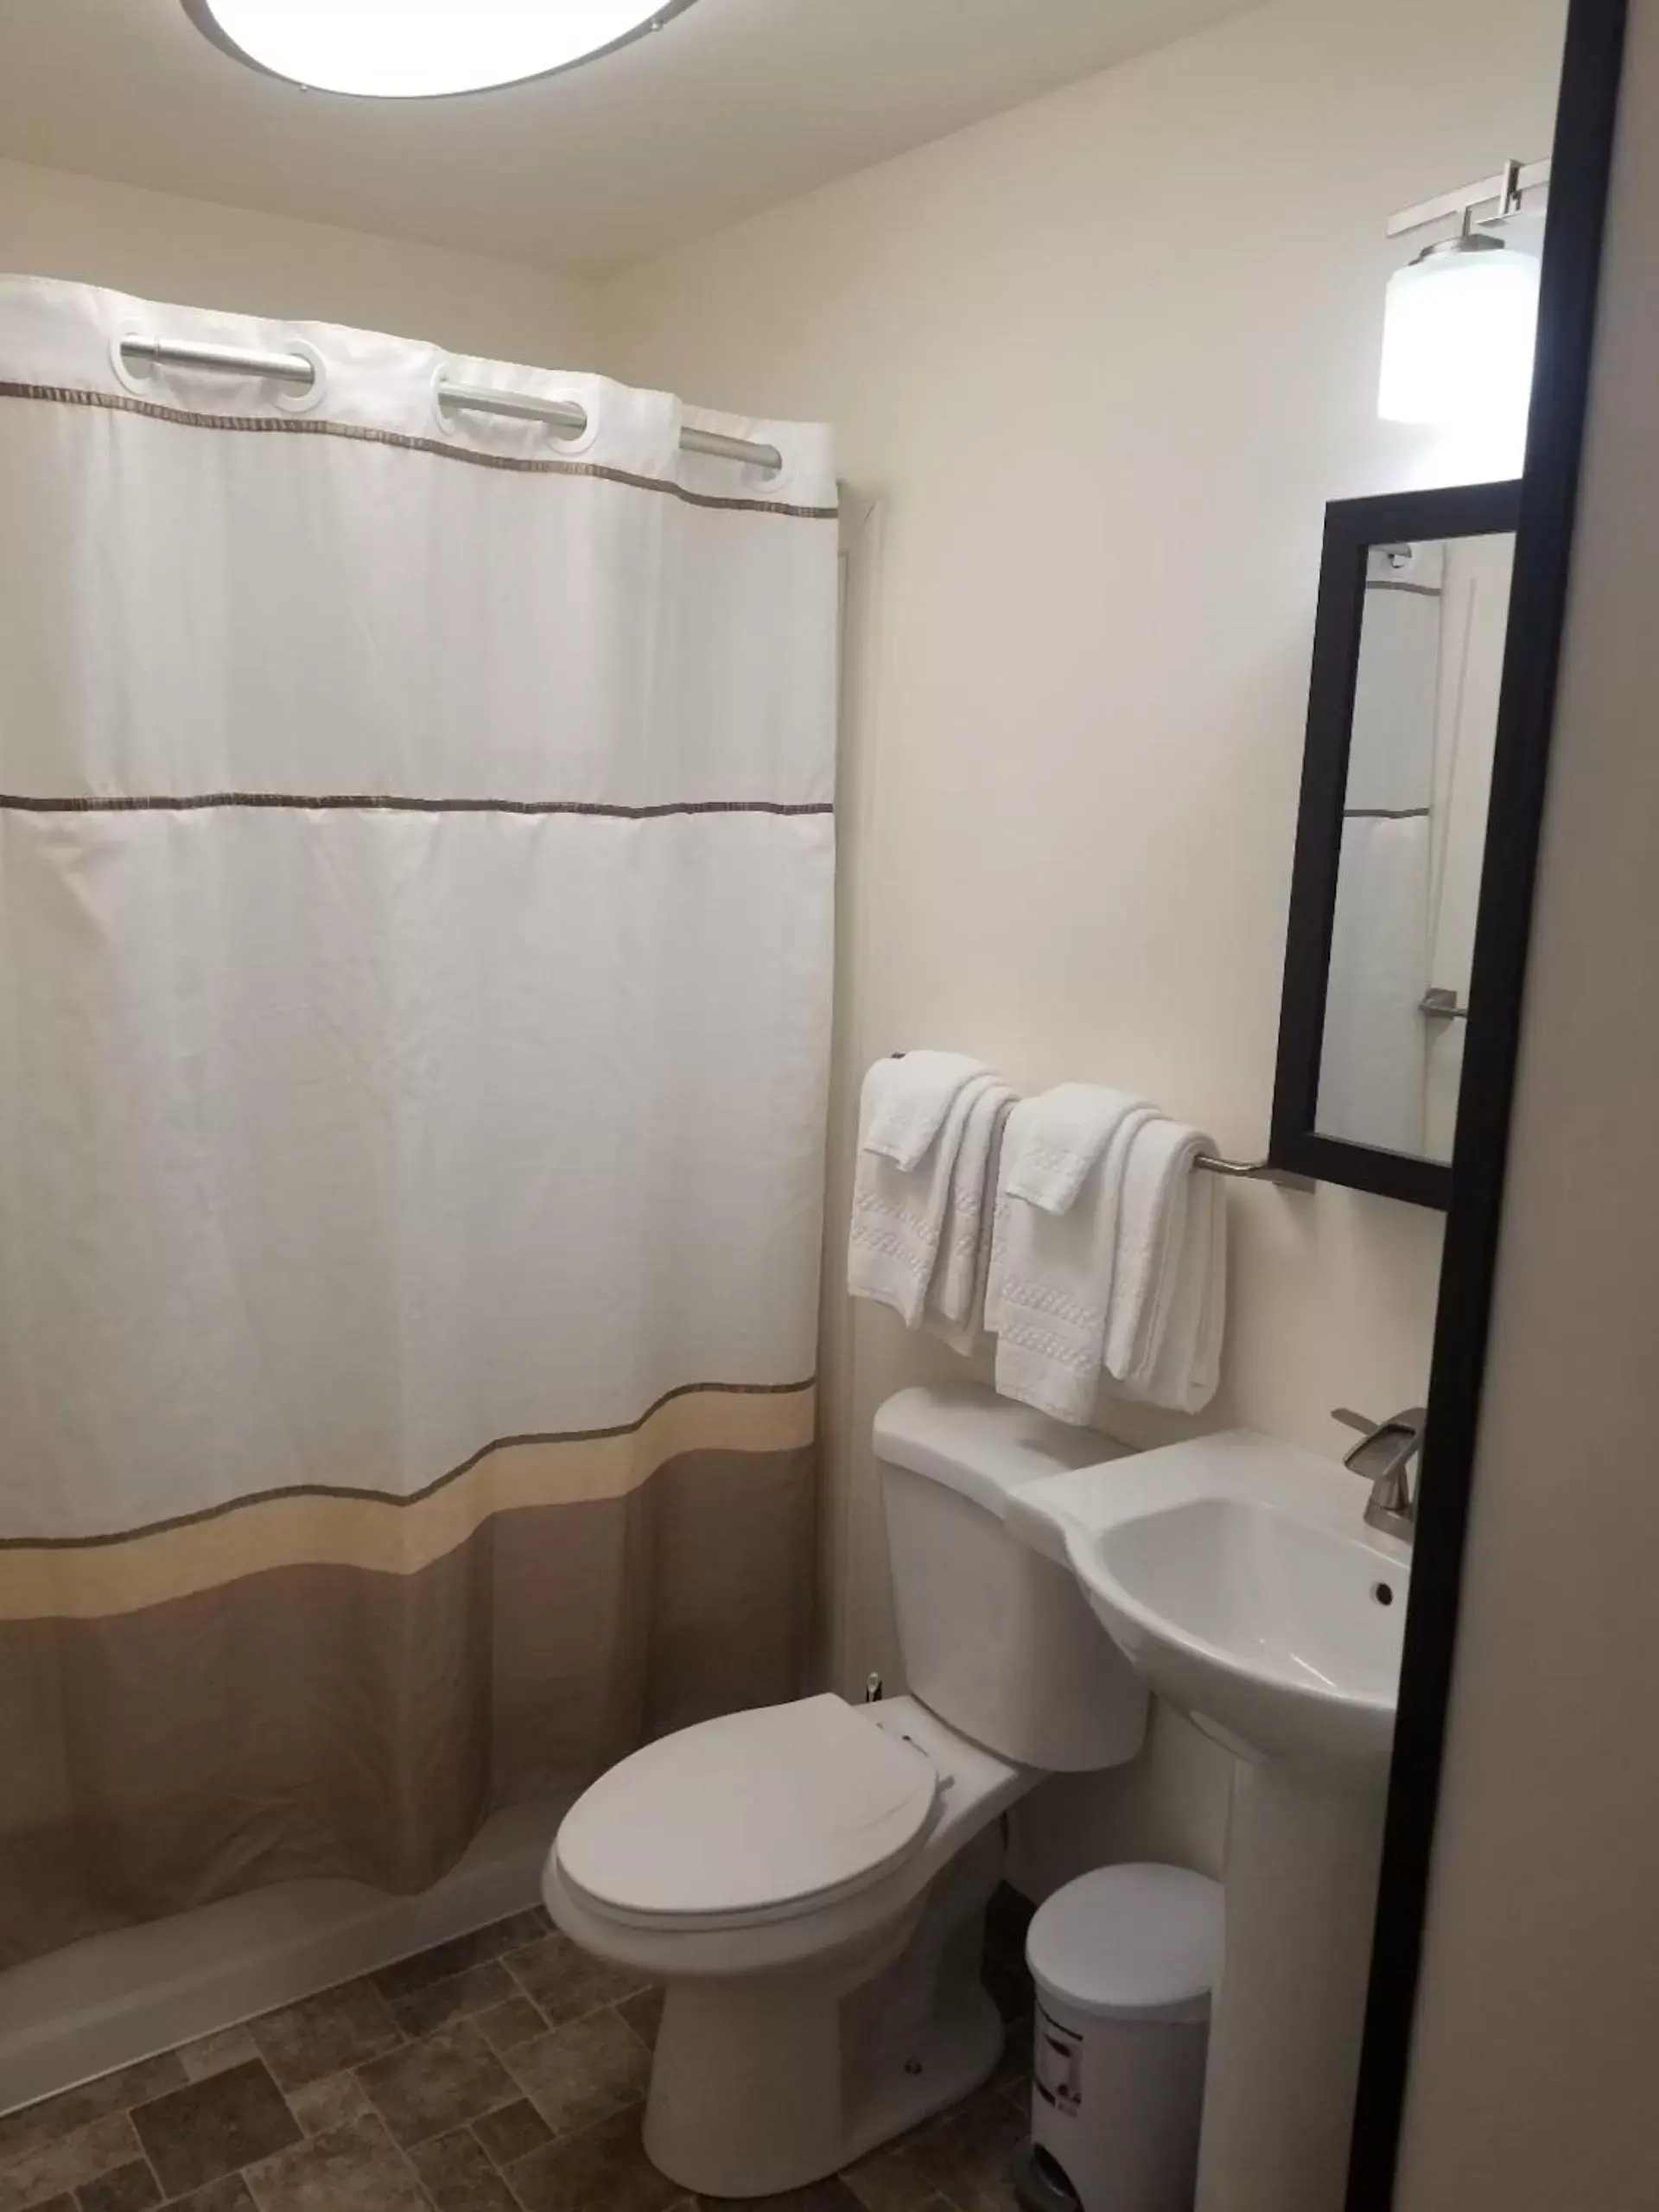 Bathroom in Hotel Seward